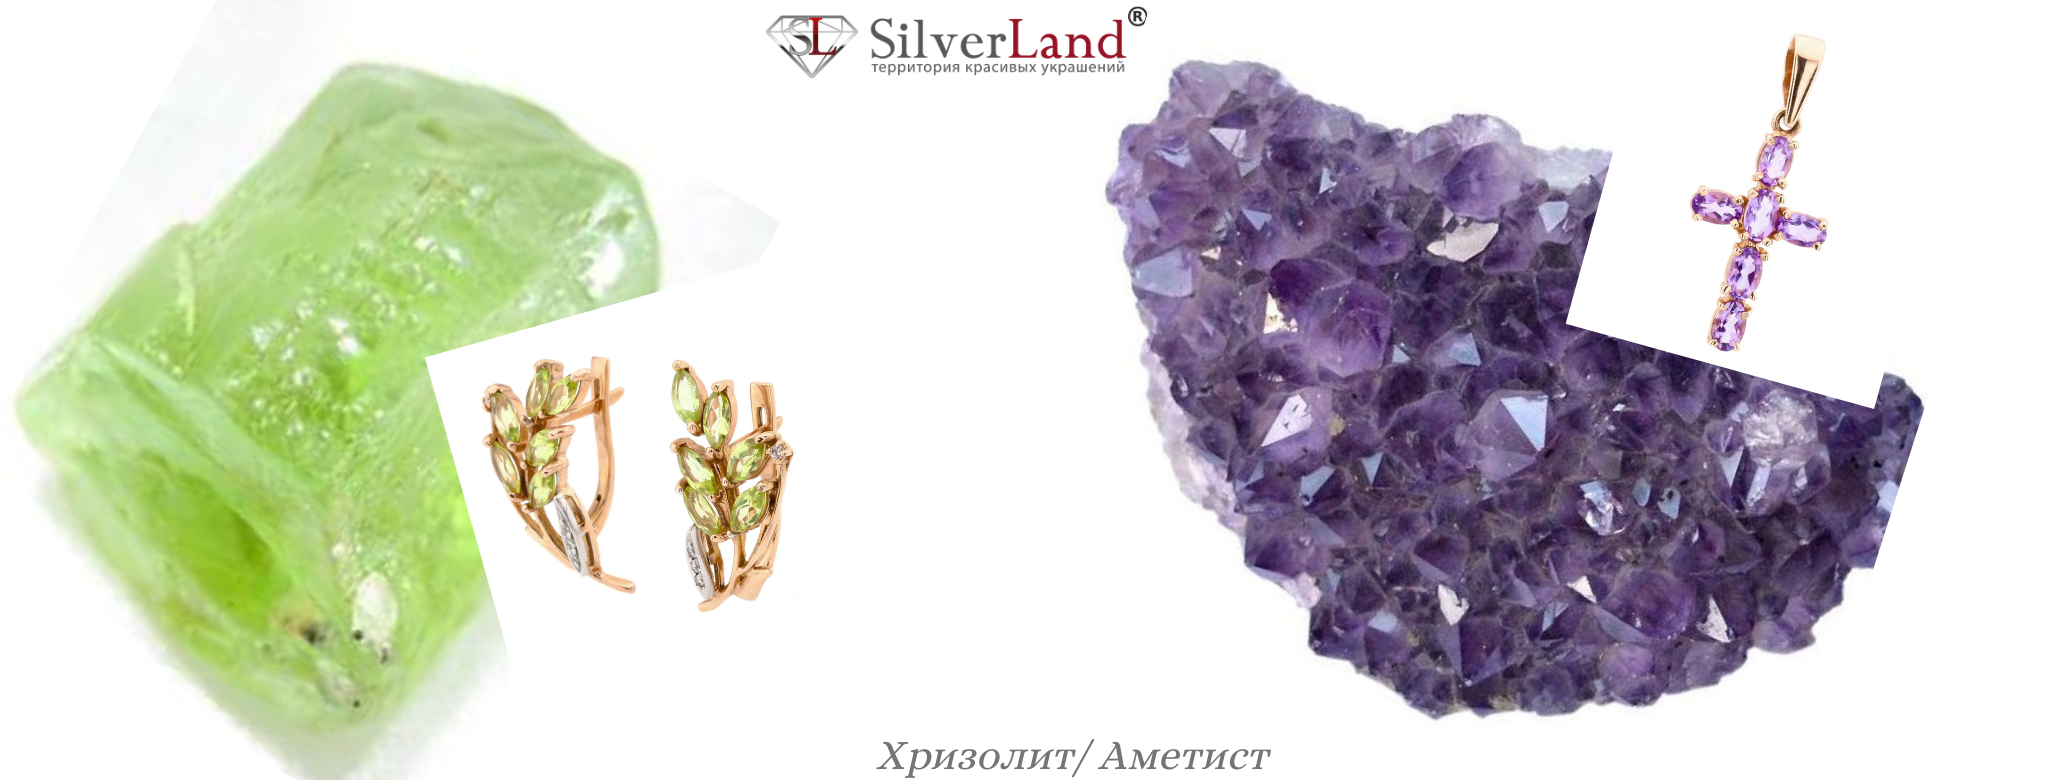 картинка виды полудрагоценных камней хризолит и аметист в ювелирных изделиях 